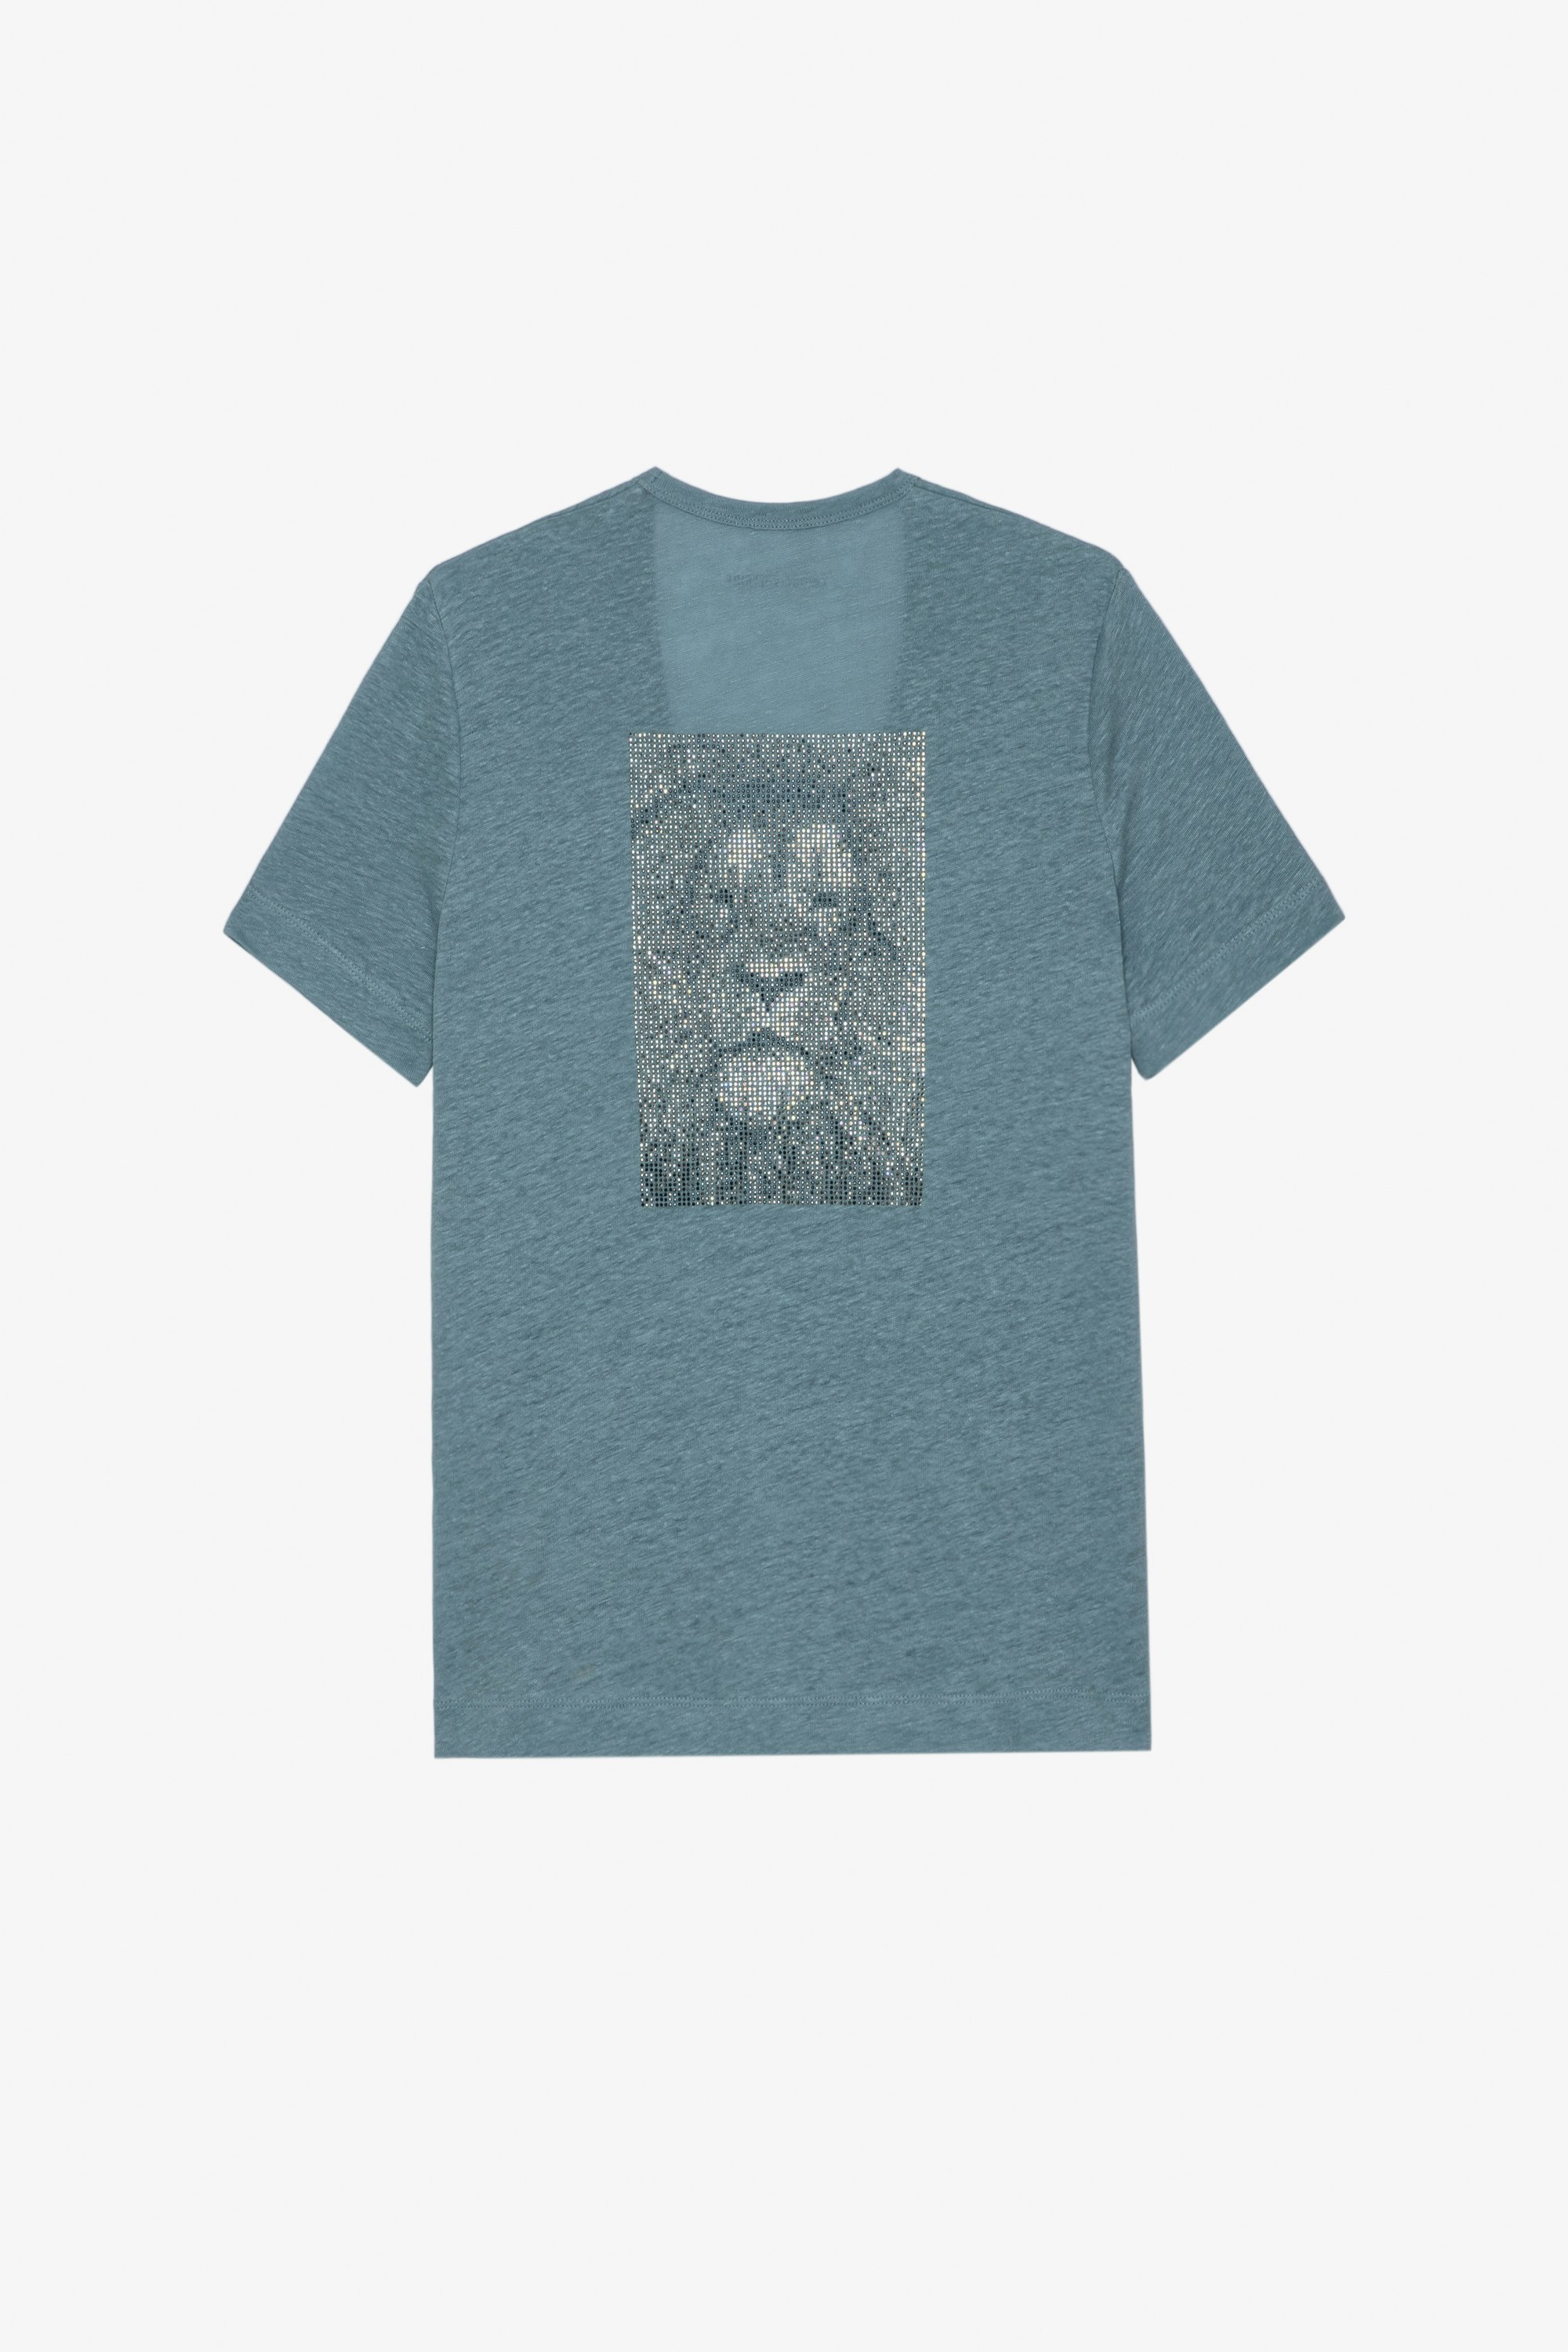 T-shirt Wassa in lino T-shirt in lino grigio con leone e cristalli sul retro - Donna